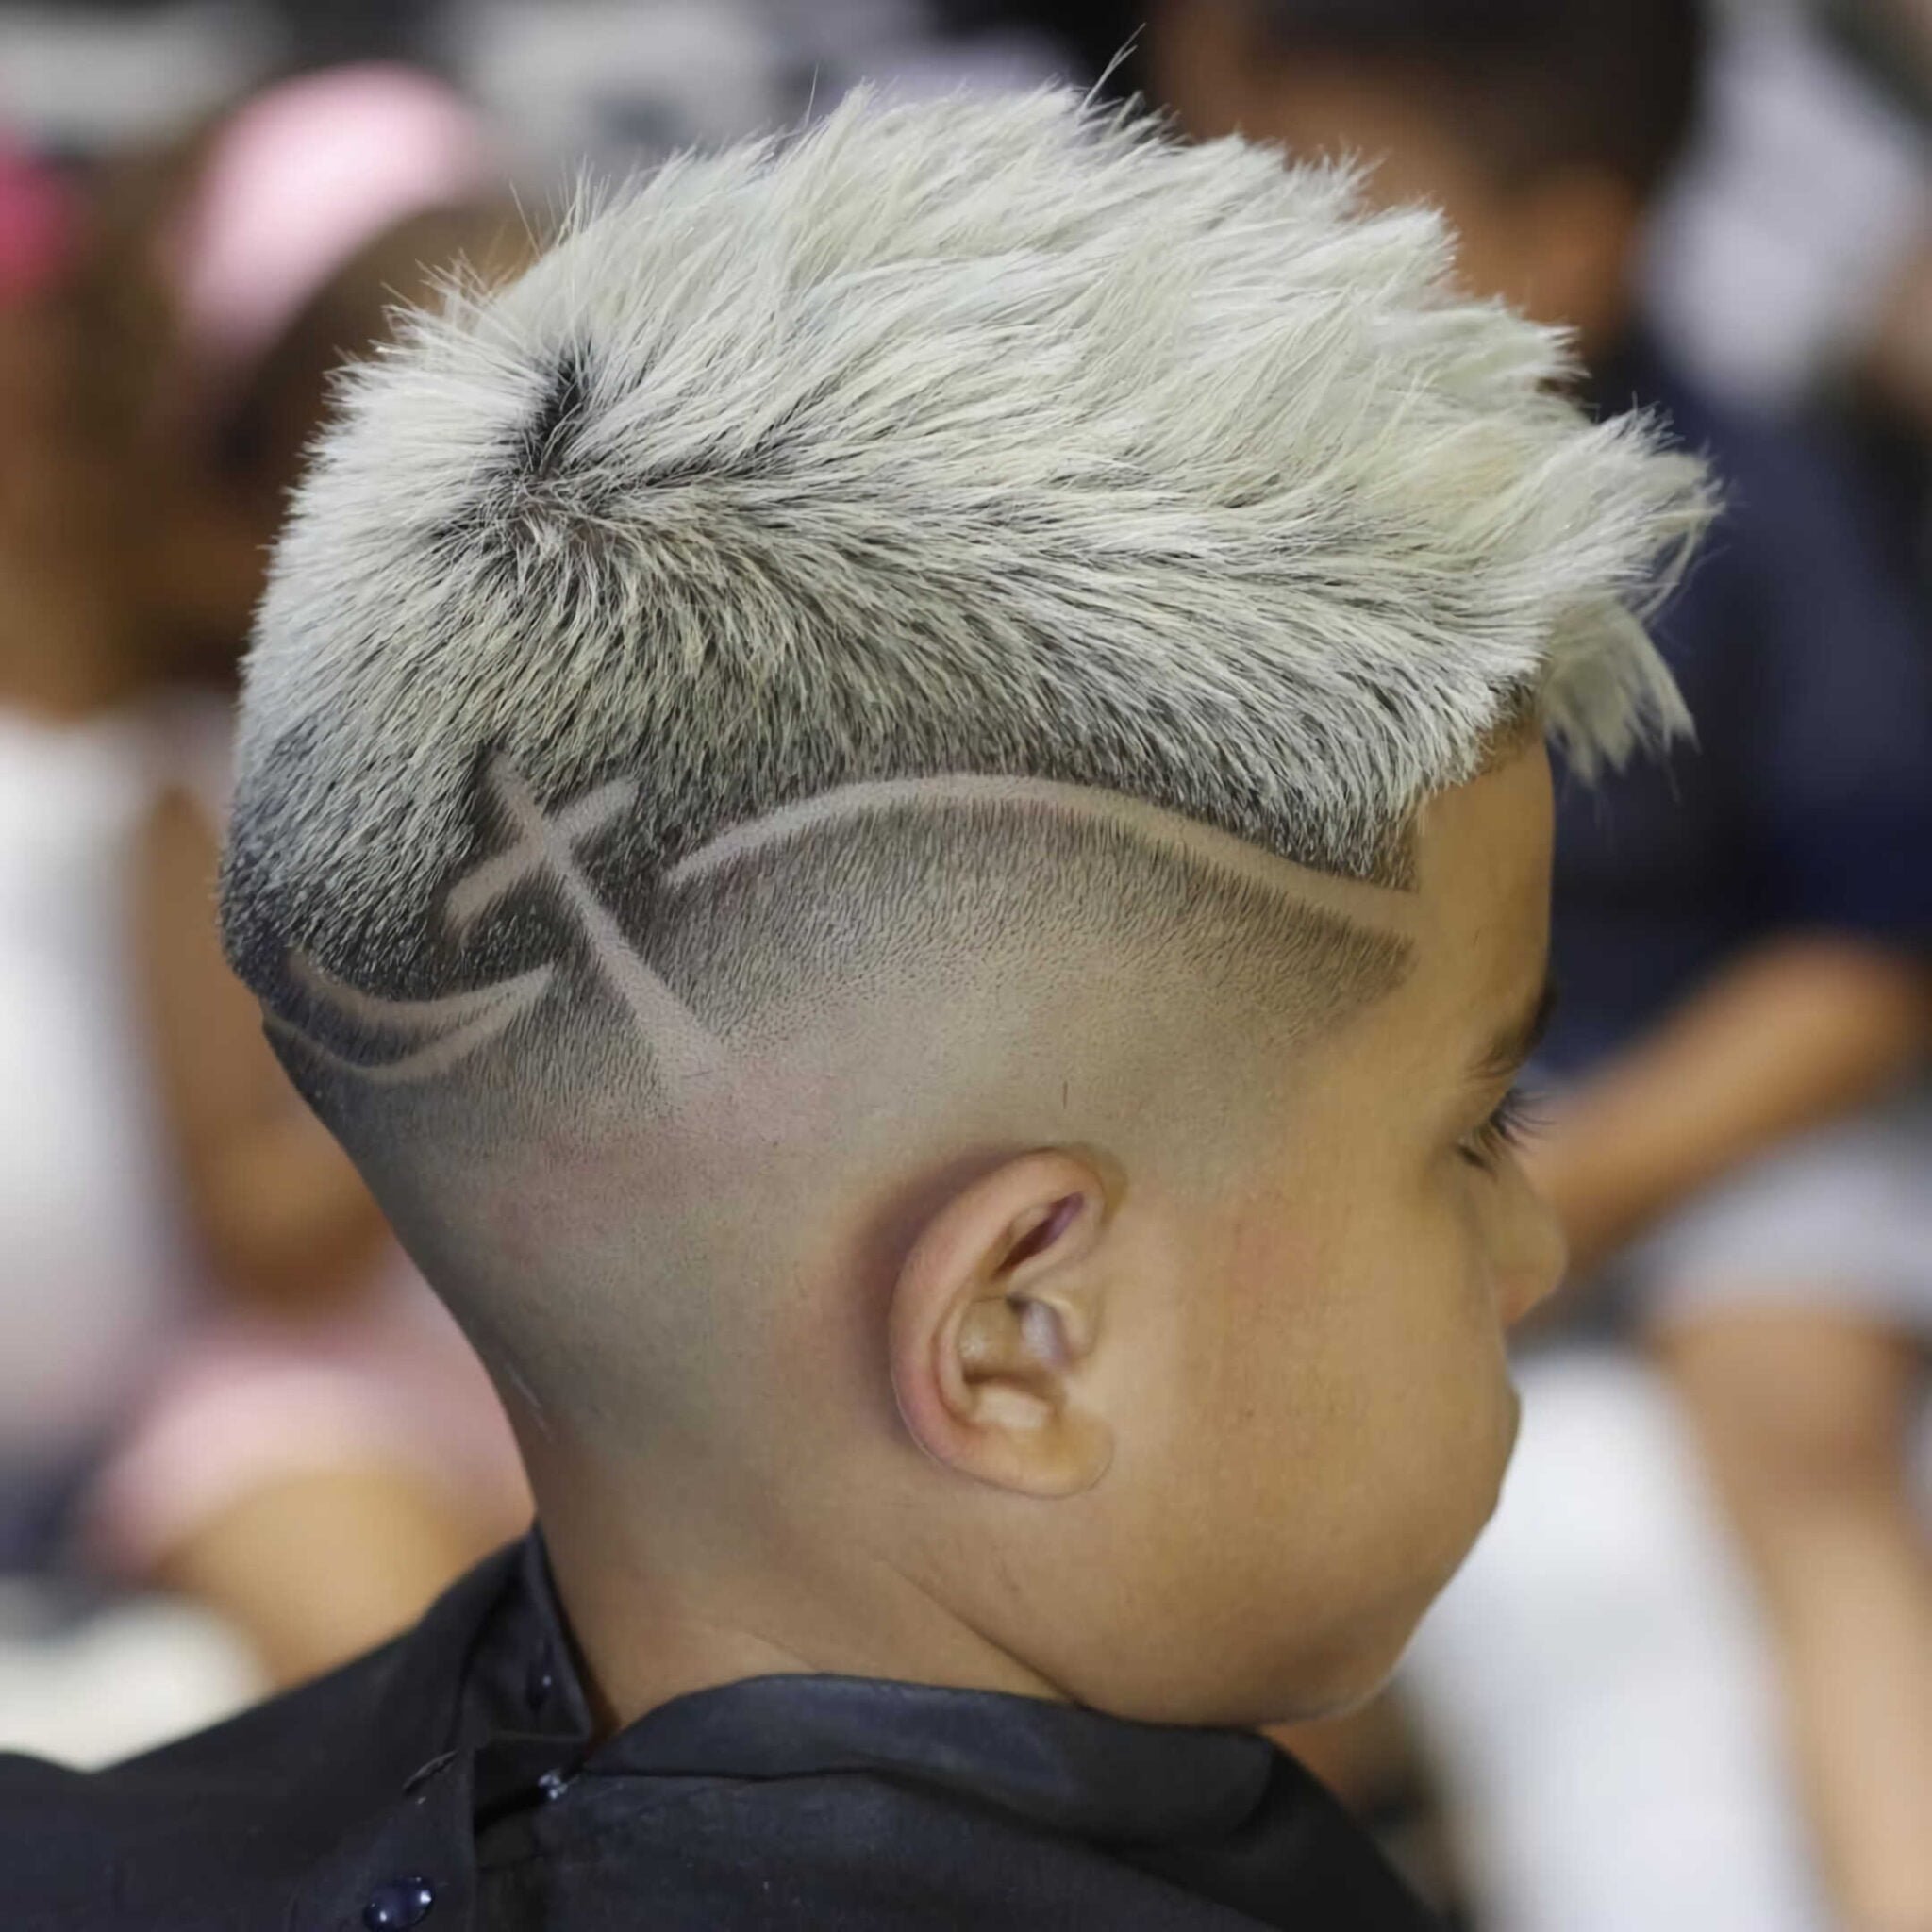 Выстриги для мальчиков на голове на светлых волосах фото